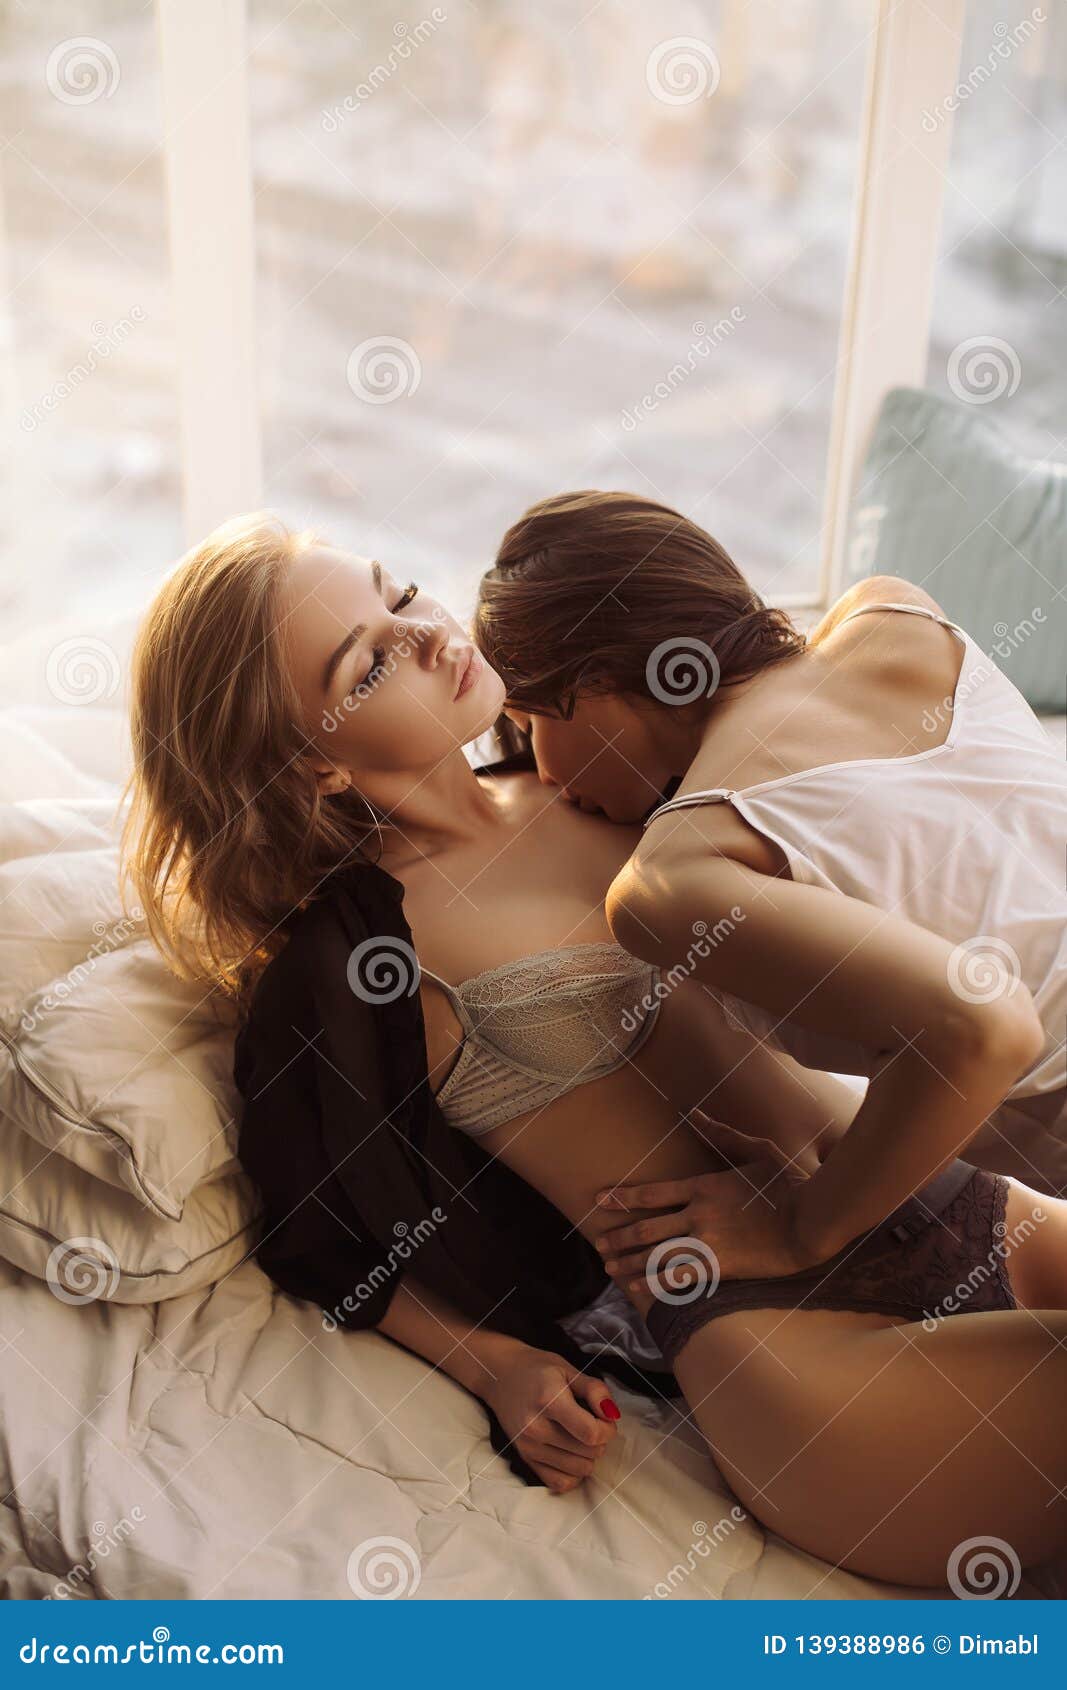 Bbw Lesbian Belly Kissing